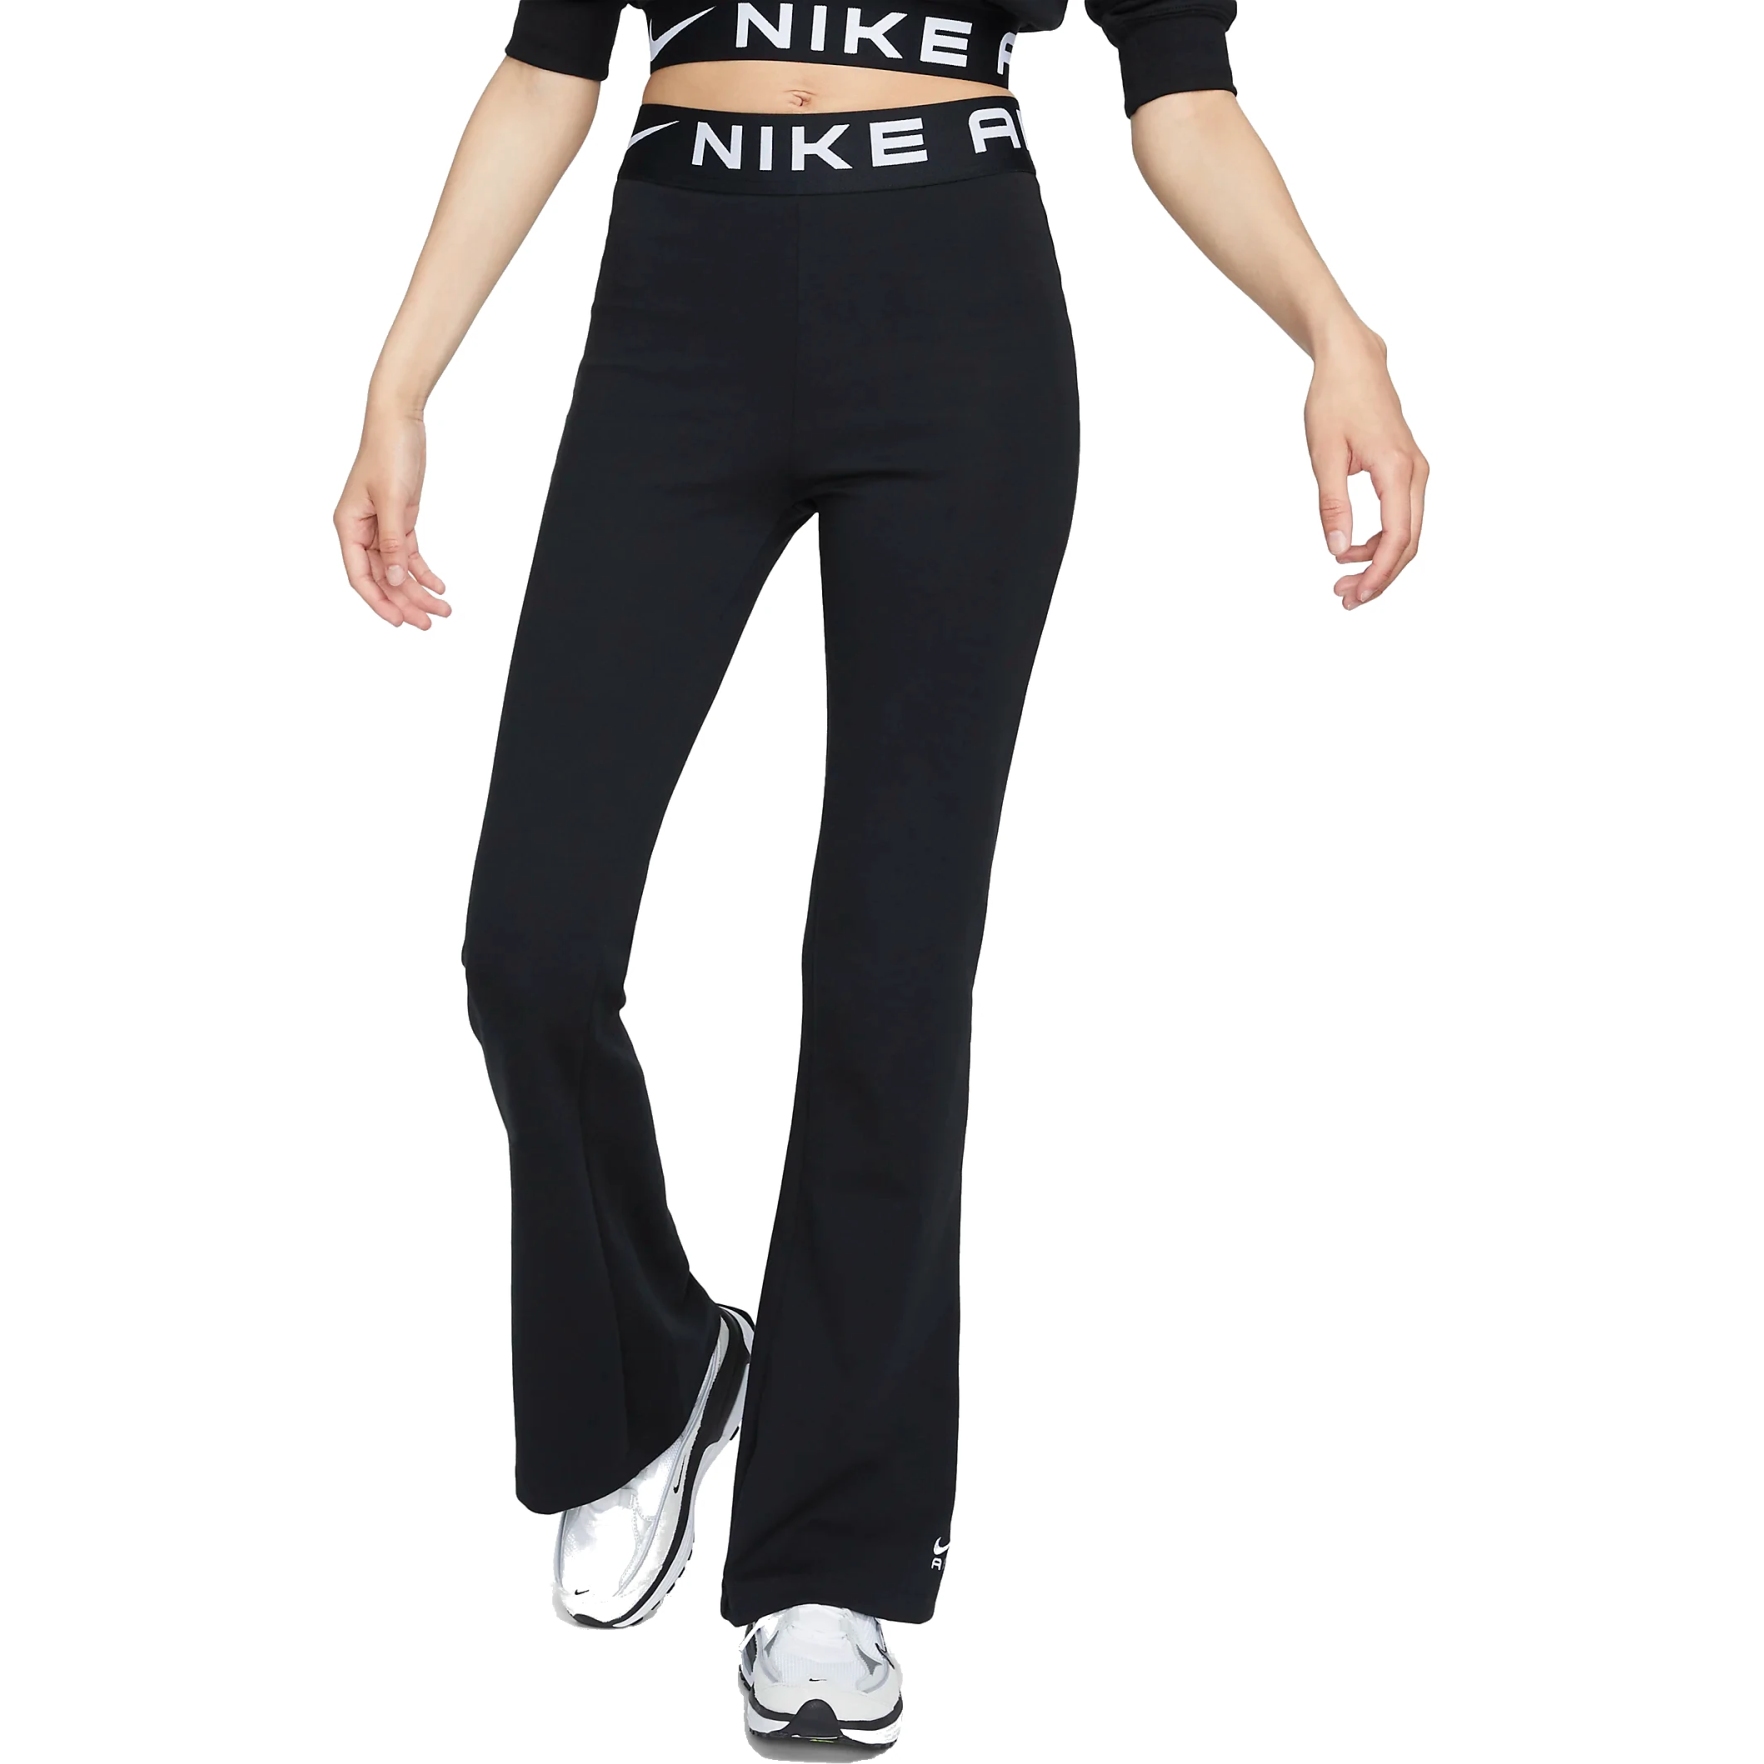 Produktbild von Nike Sportswear Air Damen-Leggings mit hohem Bund - schwarz/weiß FB8070-010